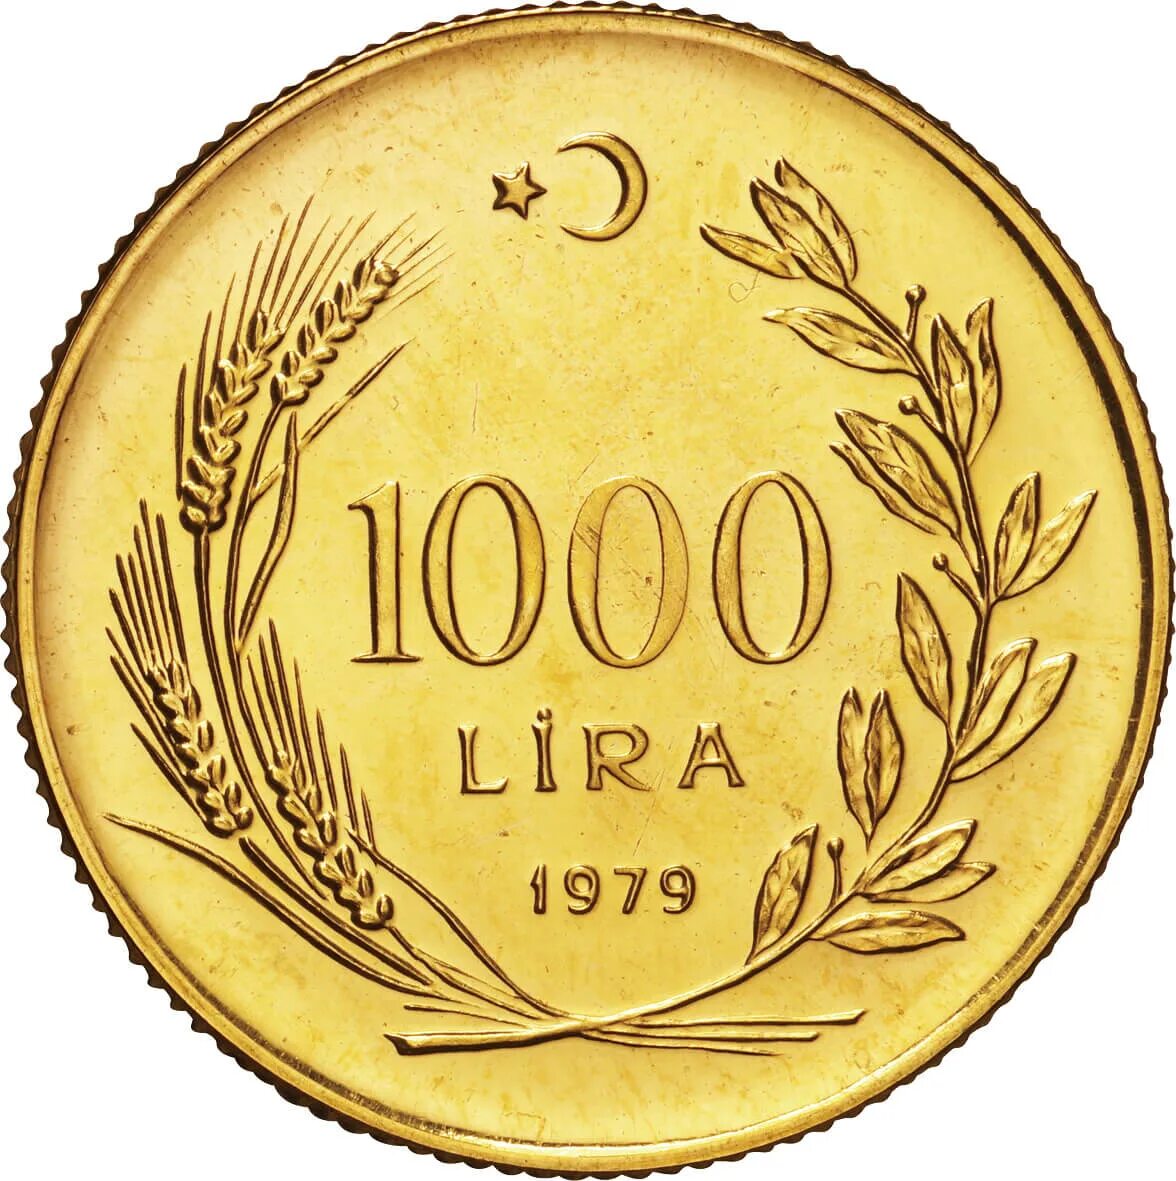 1000 лир сколько рублей